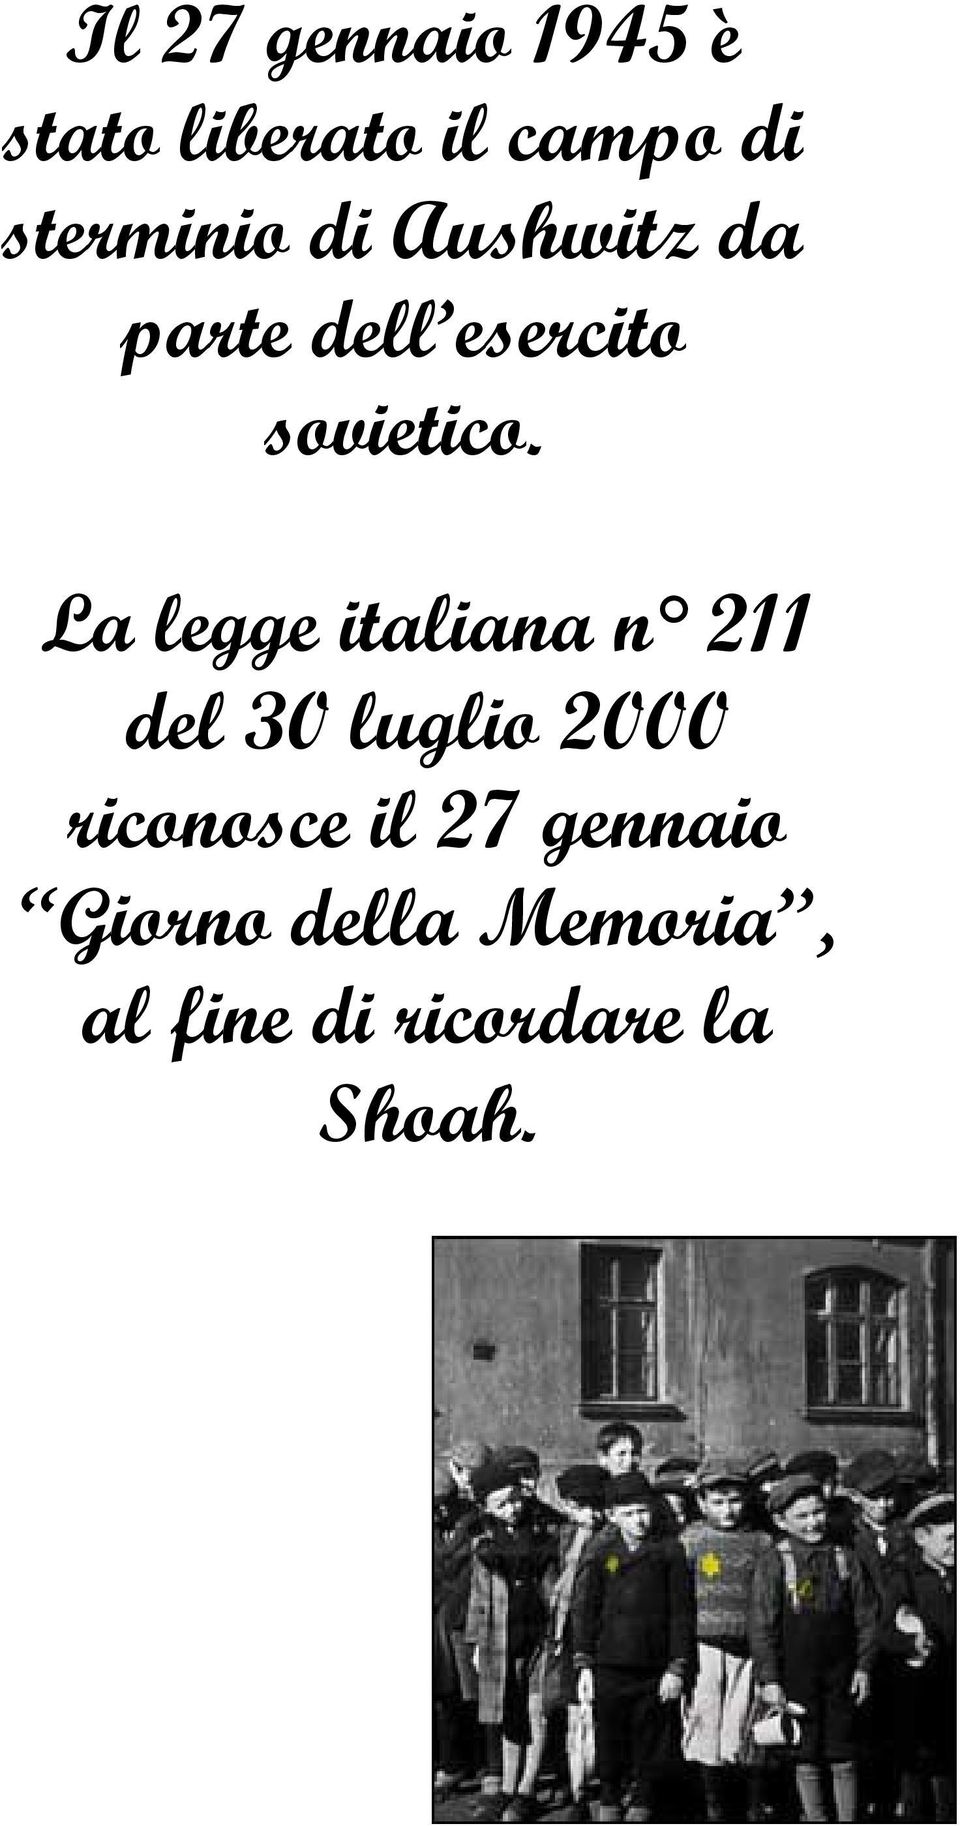 La legge italiana n 211 del 30 luglio 2000 riconosce il